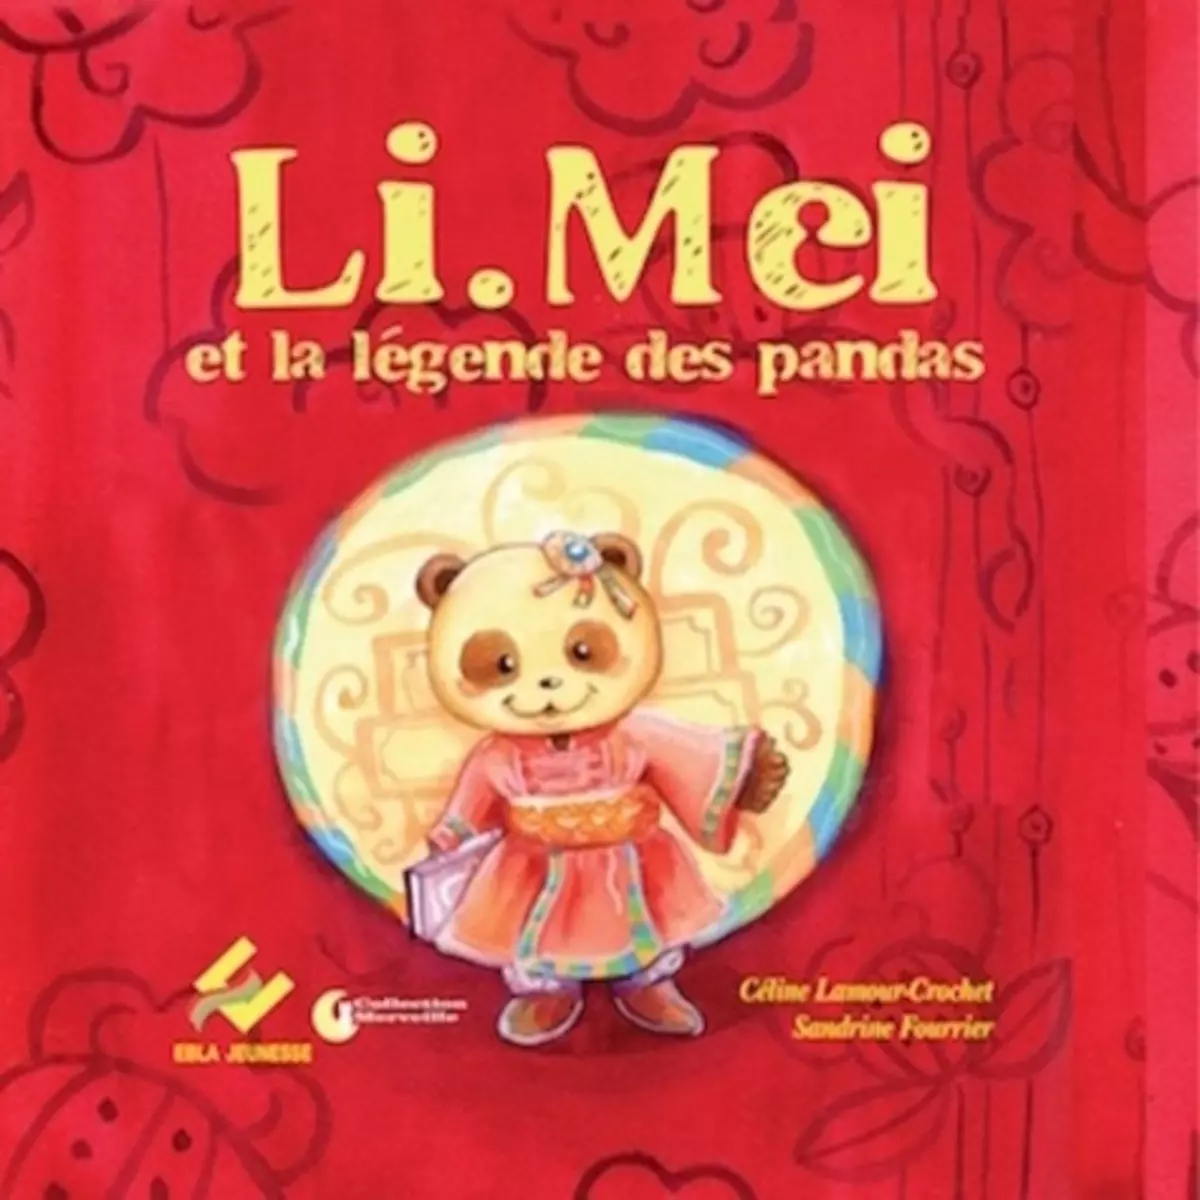  LI.MEI ET LA LEGENDE DES PANDAS, Lamour-Crochet Céline